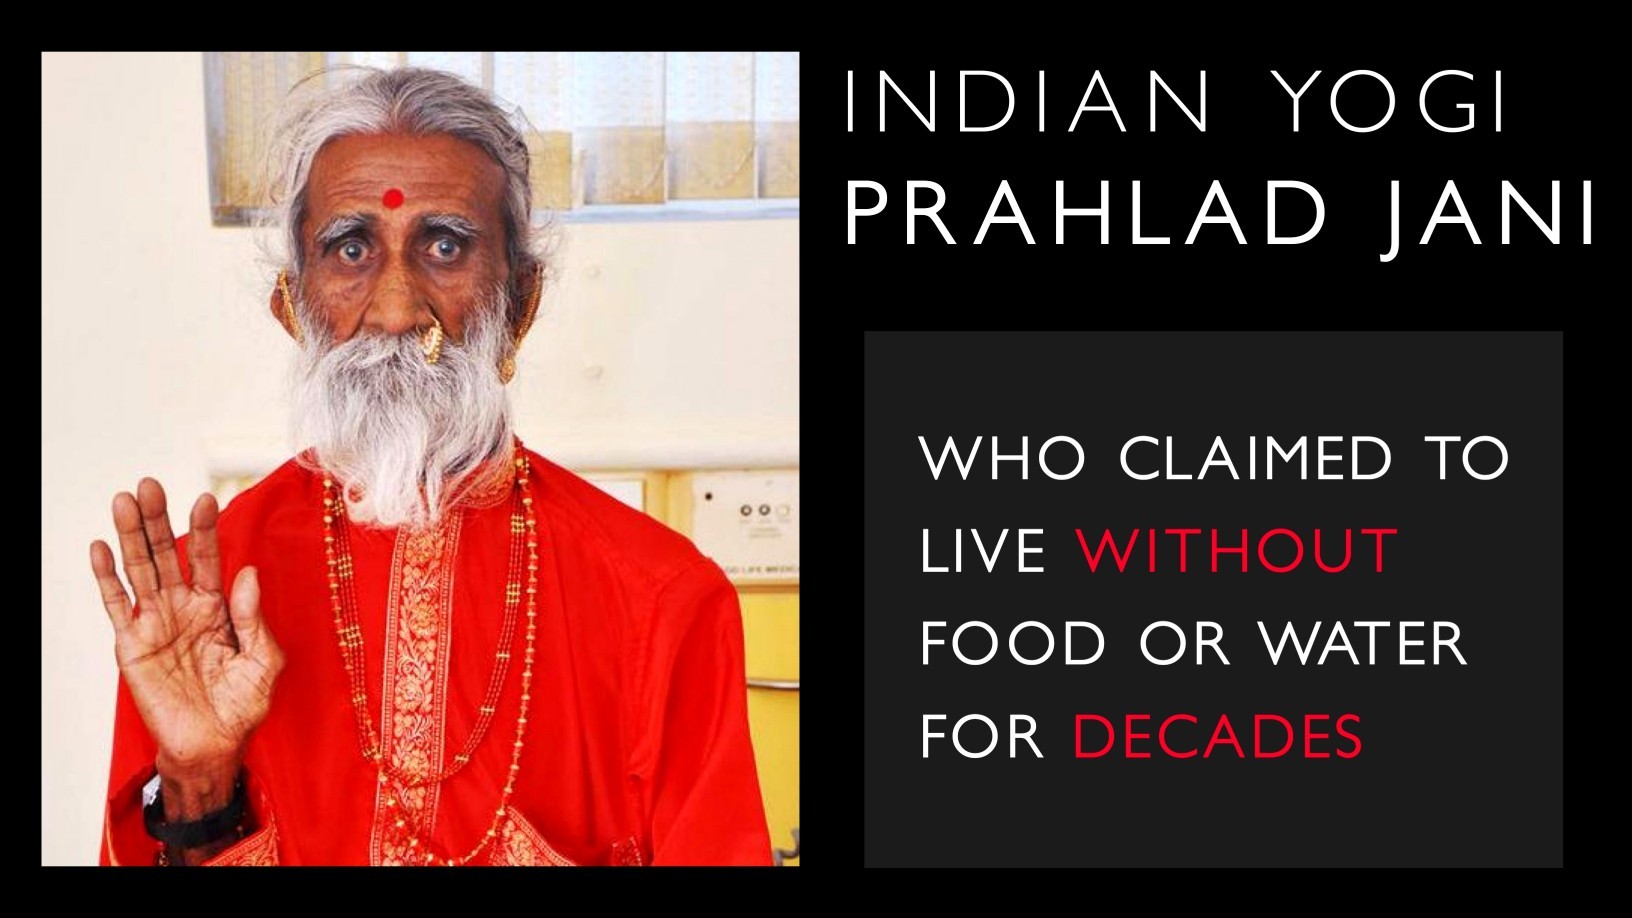 Prahlad Jani – Onlarca yıldır aç ve susuz yaşadığını iddia eden Hintli yogi 1